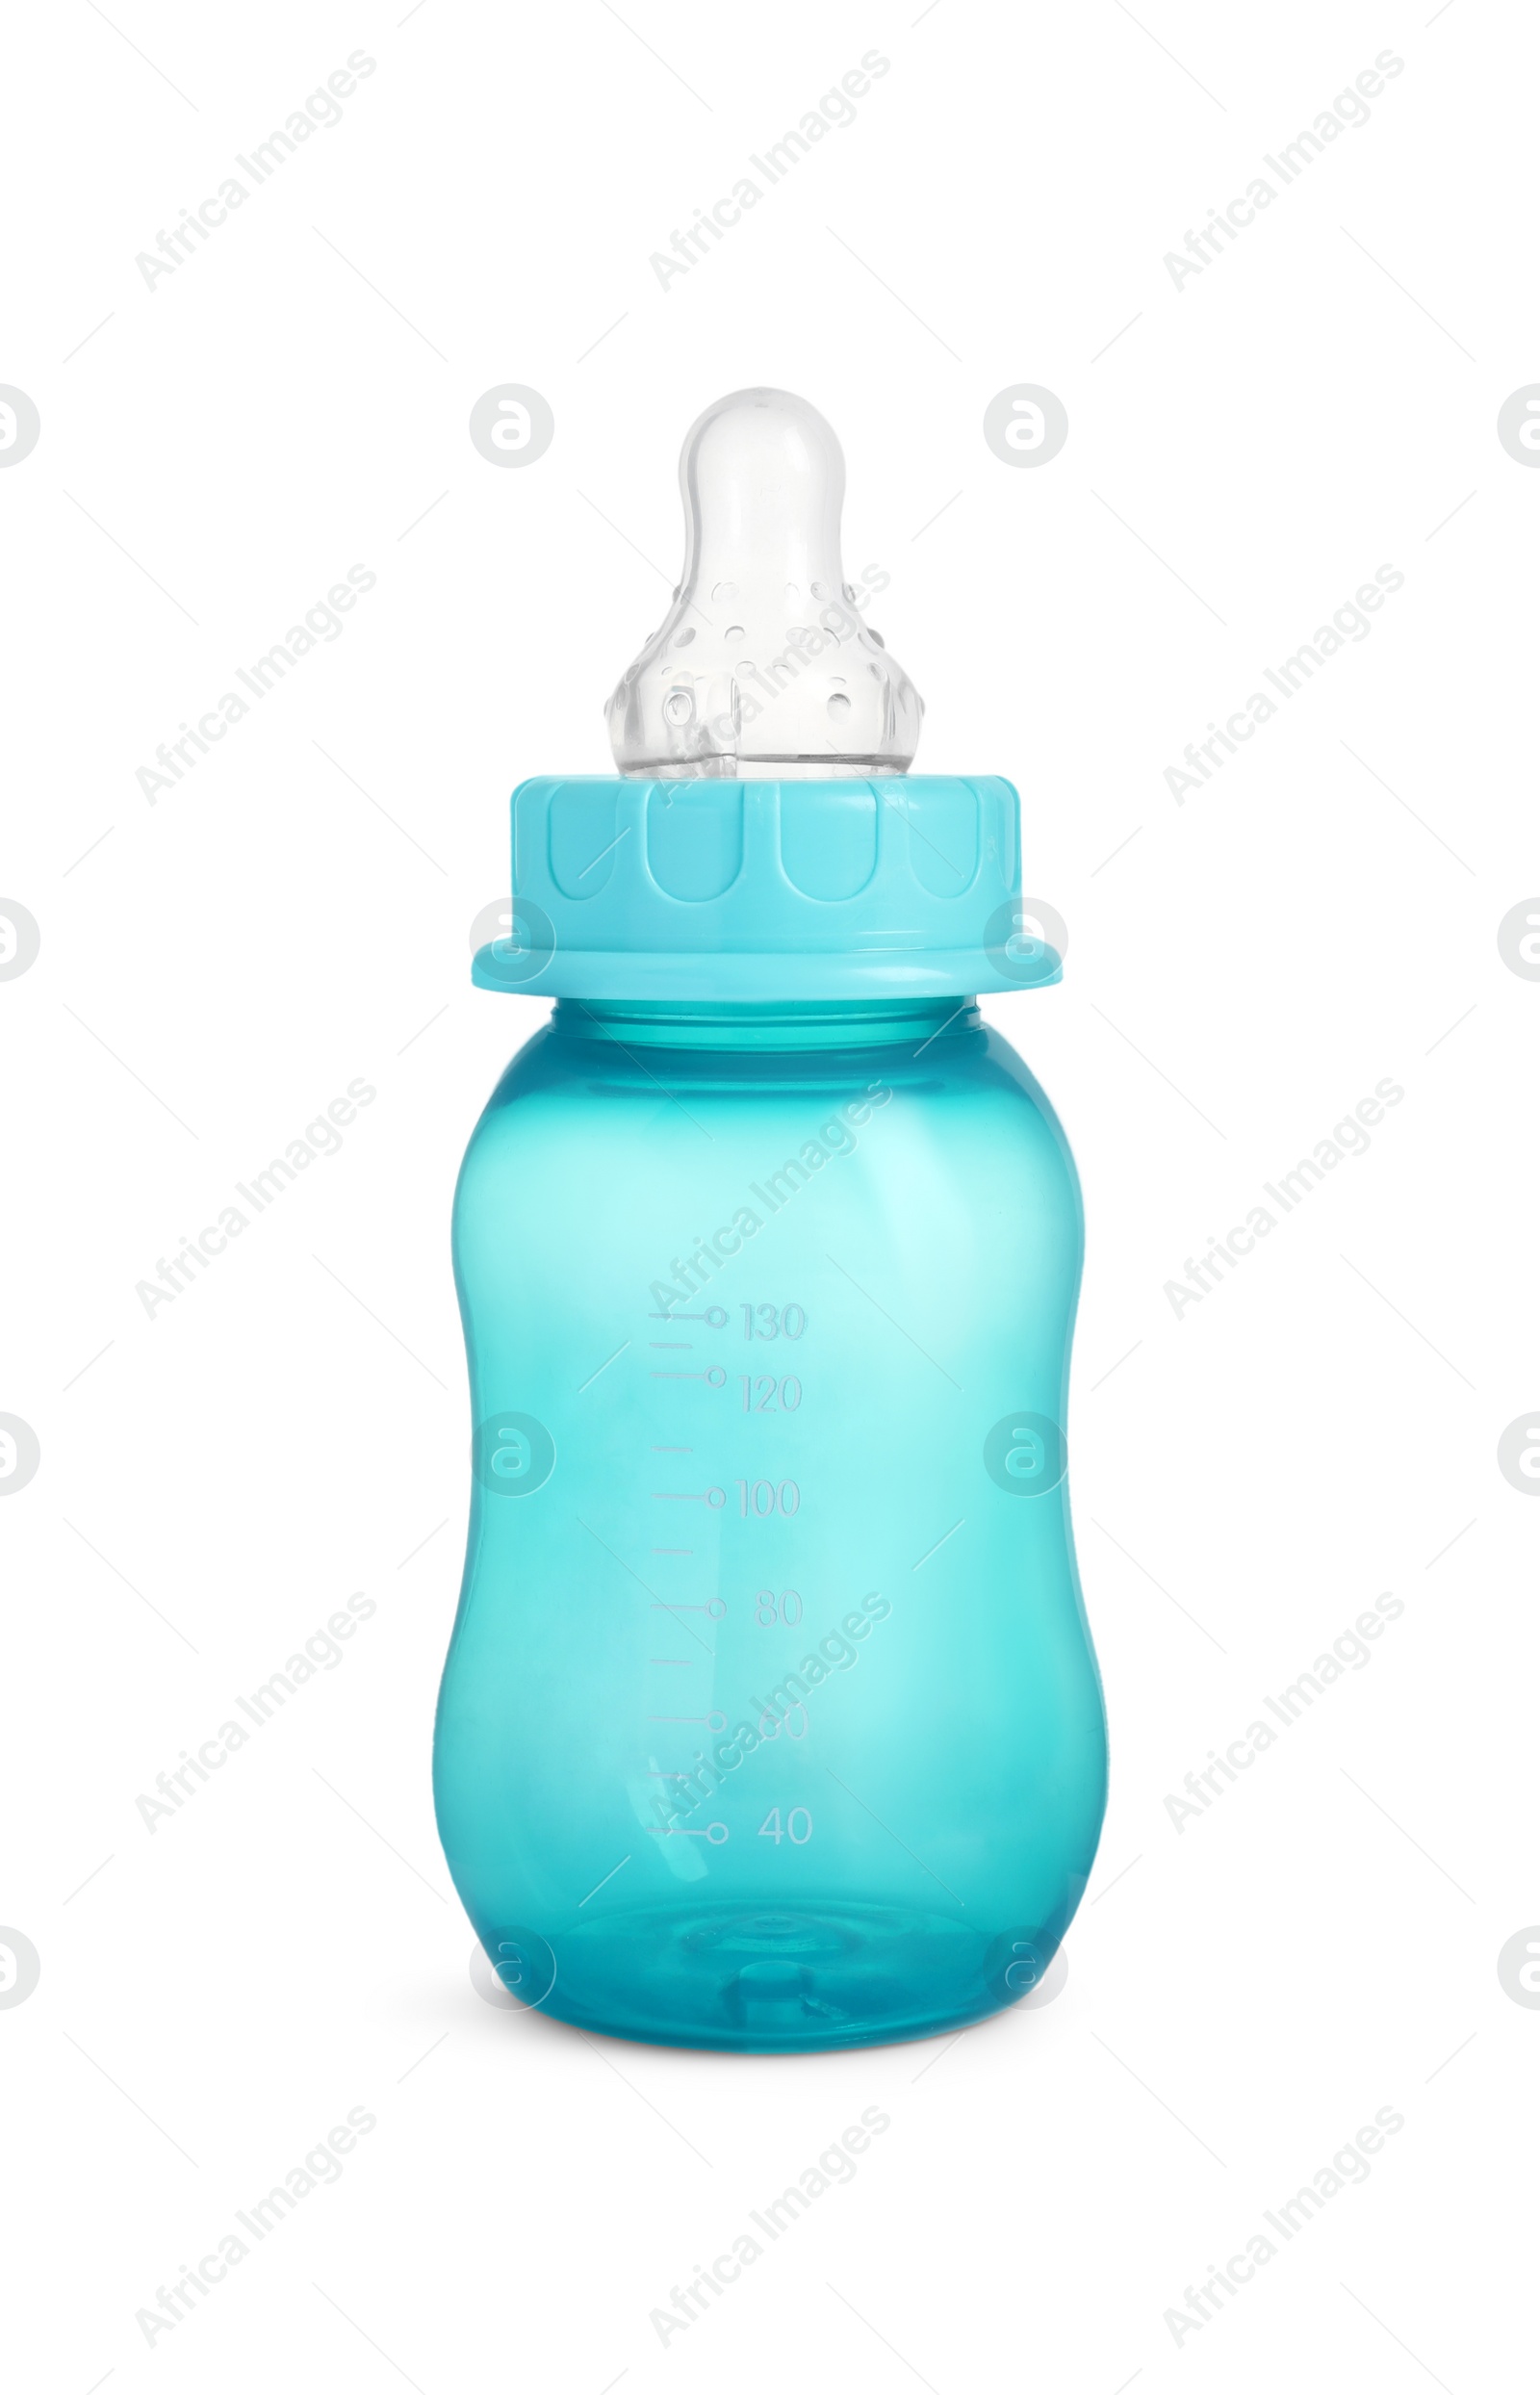 Photo of Empty turquoise feeding bottle for infant formula isolated on white